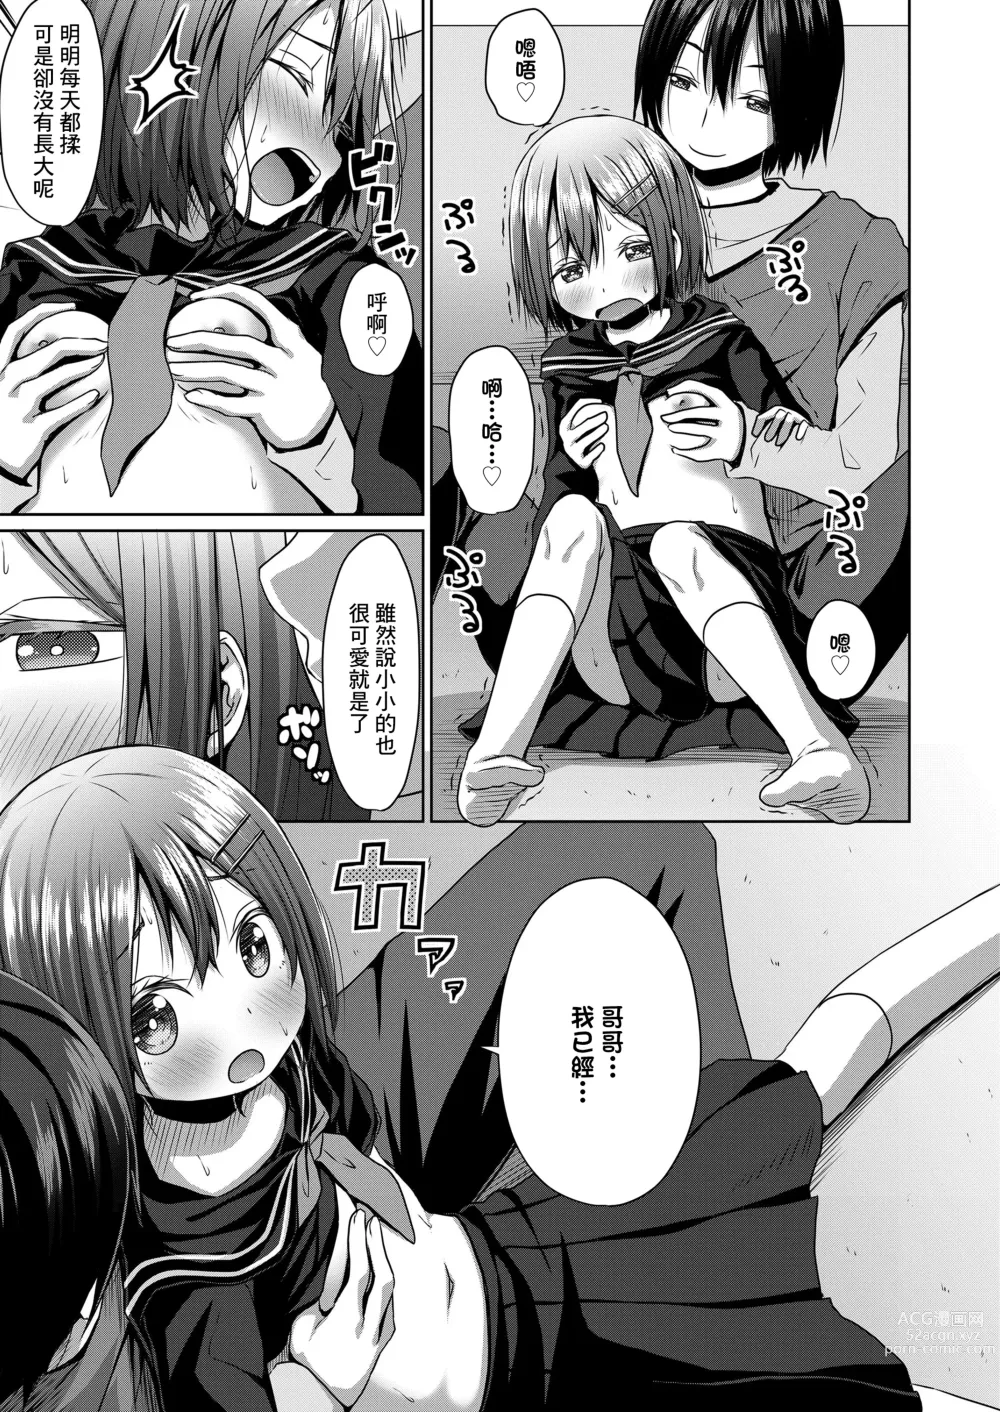 Page 7 of manga Seifuku